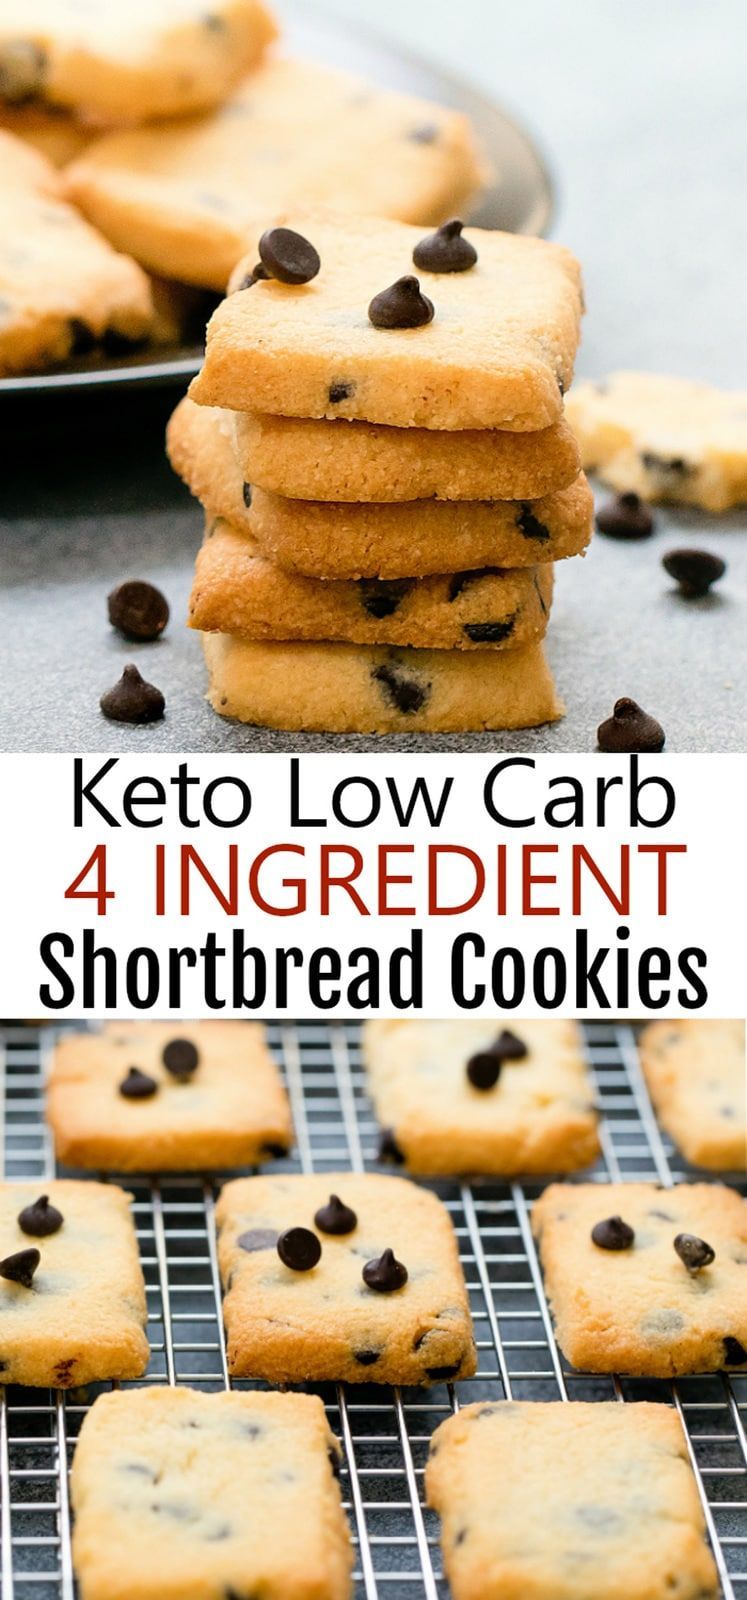 4 Ingredient Keto Shortbread Cookies - Kirbie's Cravings -   21 cake ingredients shortbread cookies ideas